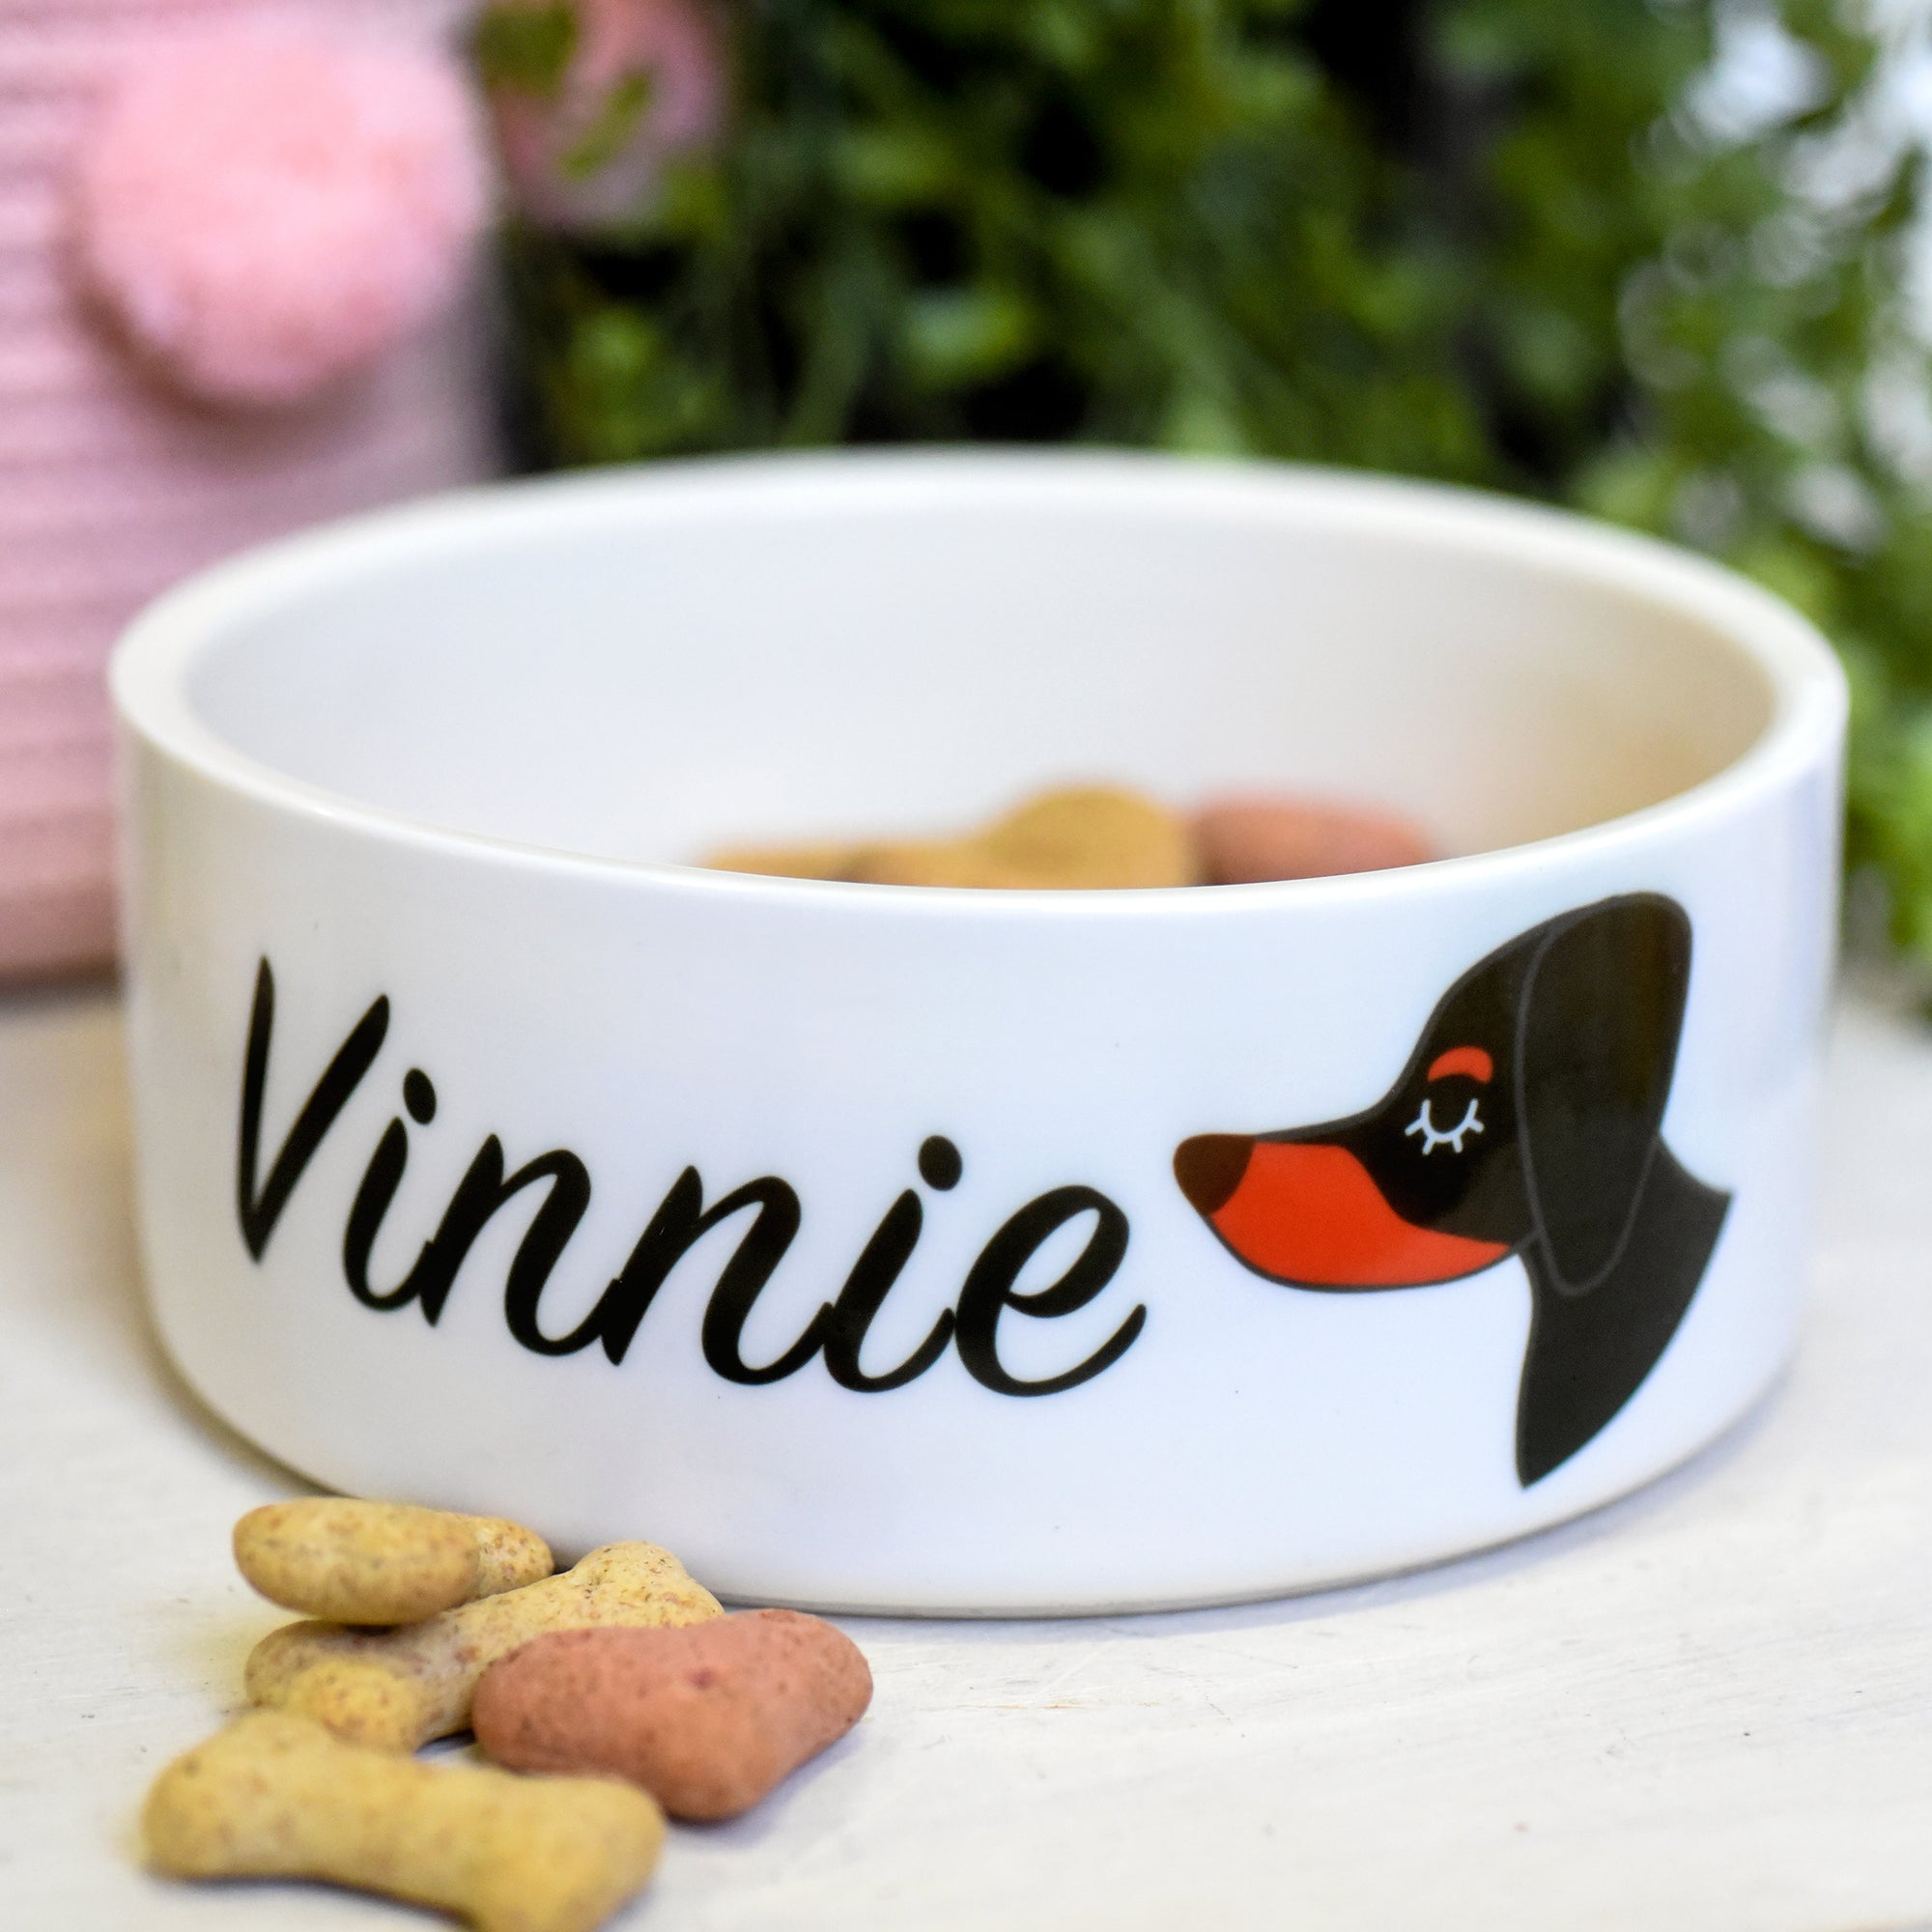 Dachshund Dog Personalised Ceramic Dog Bowl